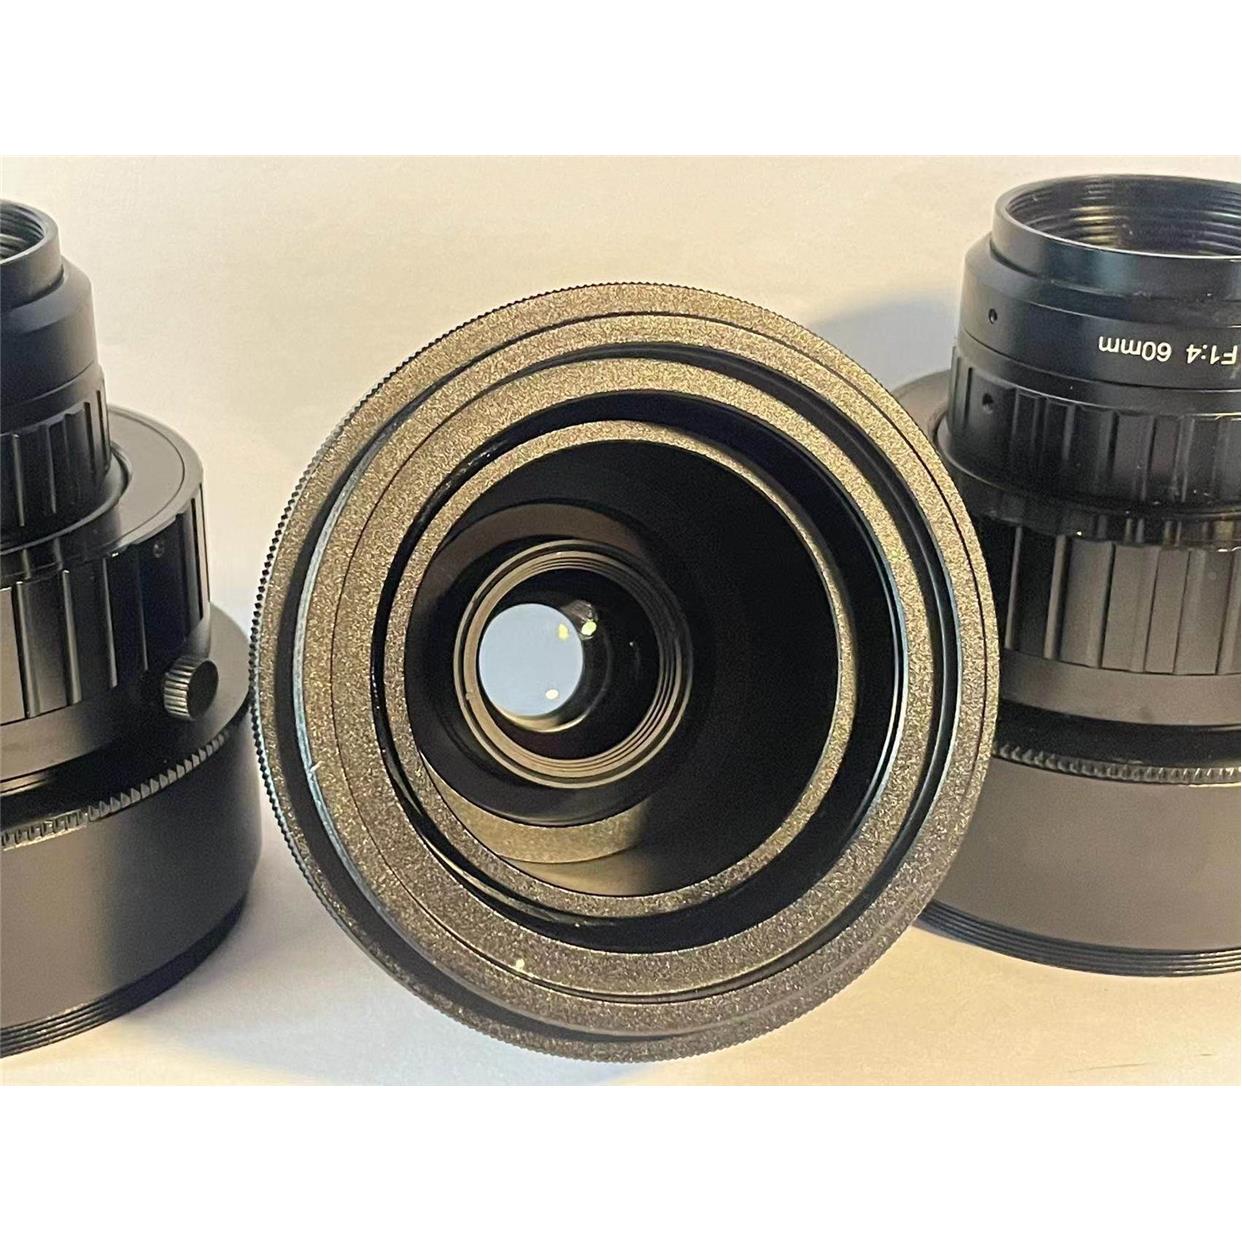 非标价东圳光学线扫工业镜头60mm，成色如新，带转接环！询价客服